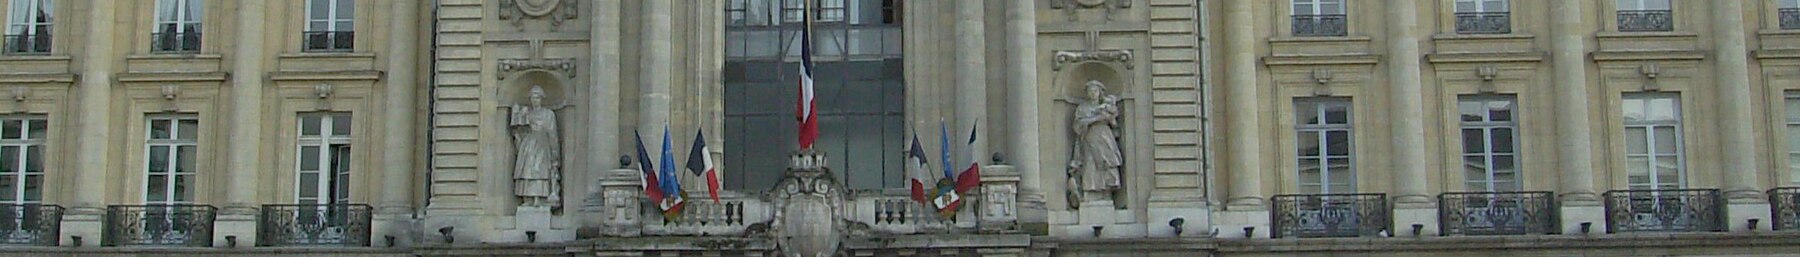 Rennes banner Facade of Palais du Commerce.jpg